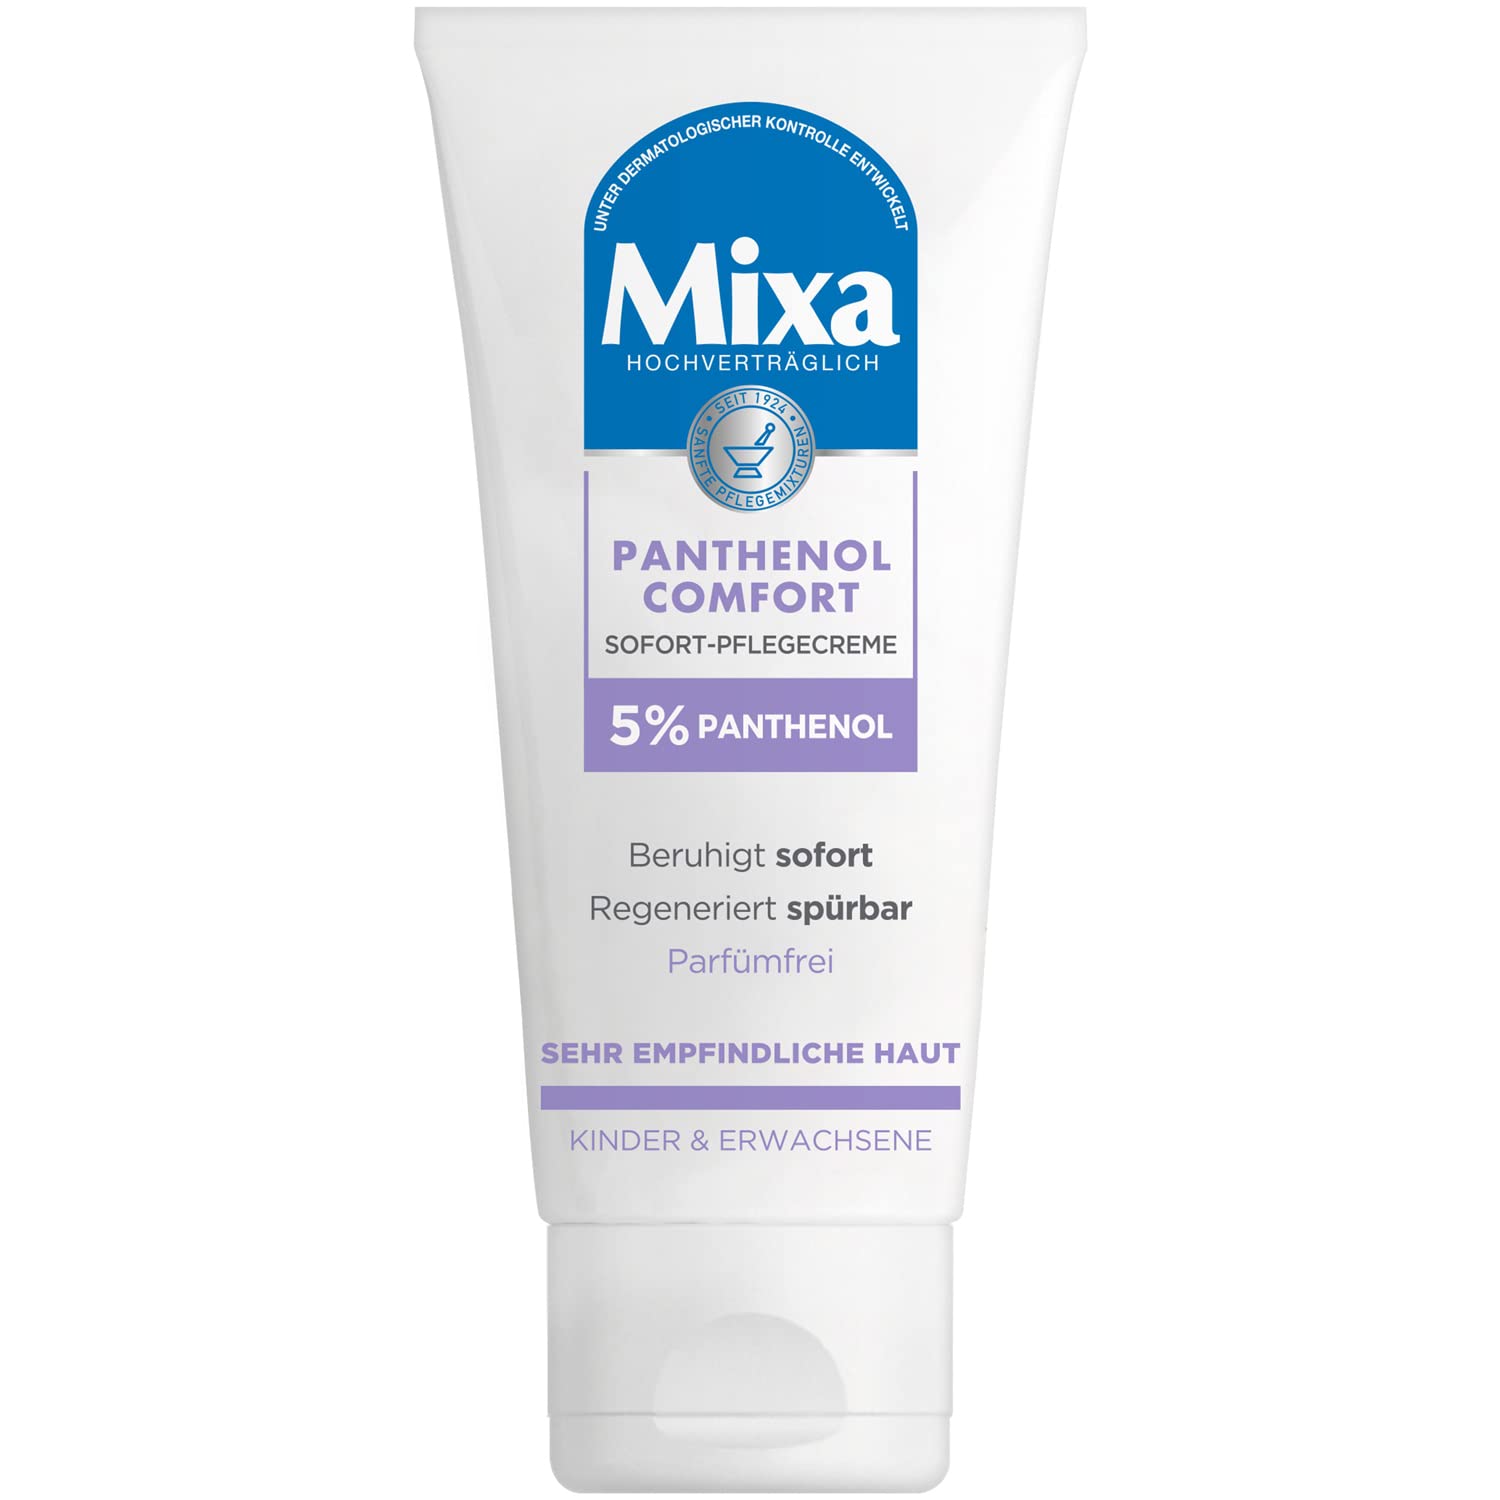 MIXA Panthenol Comfort Sofort-Pflegecreme 5% Panthenol Vitamin B5 Mixa Cica